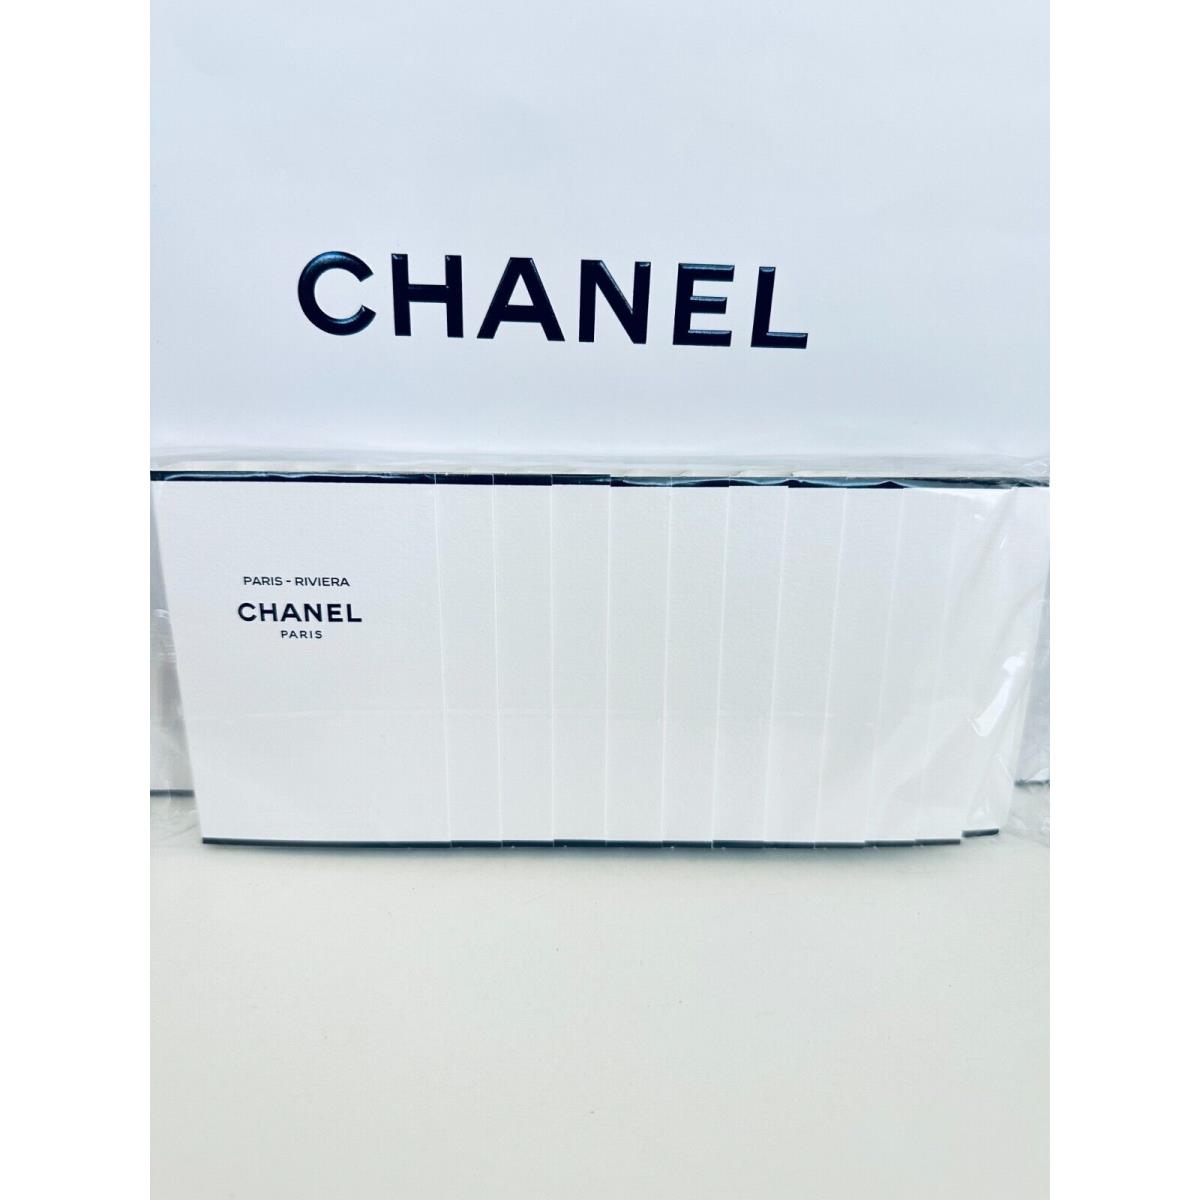 Chanel Les Eaux de Chanel Paris Sample Size 1.5ml-12pcs/pack Choose Your Scent Chanel Paris Riviera